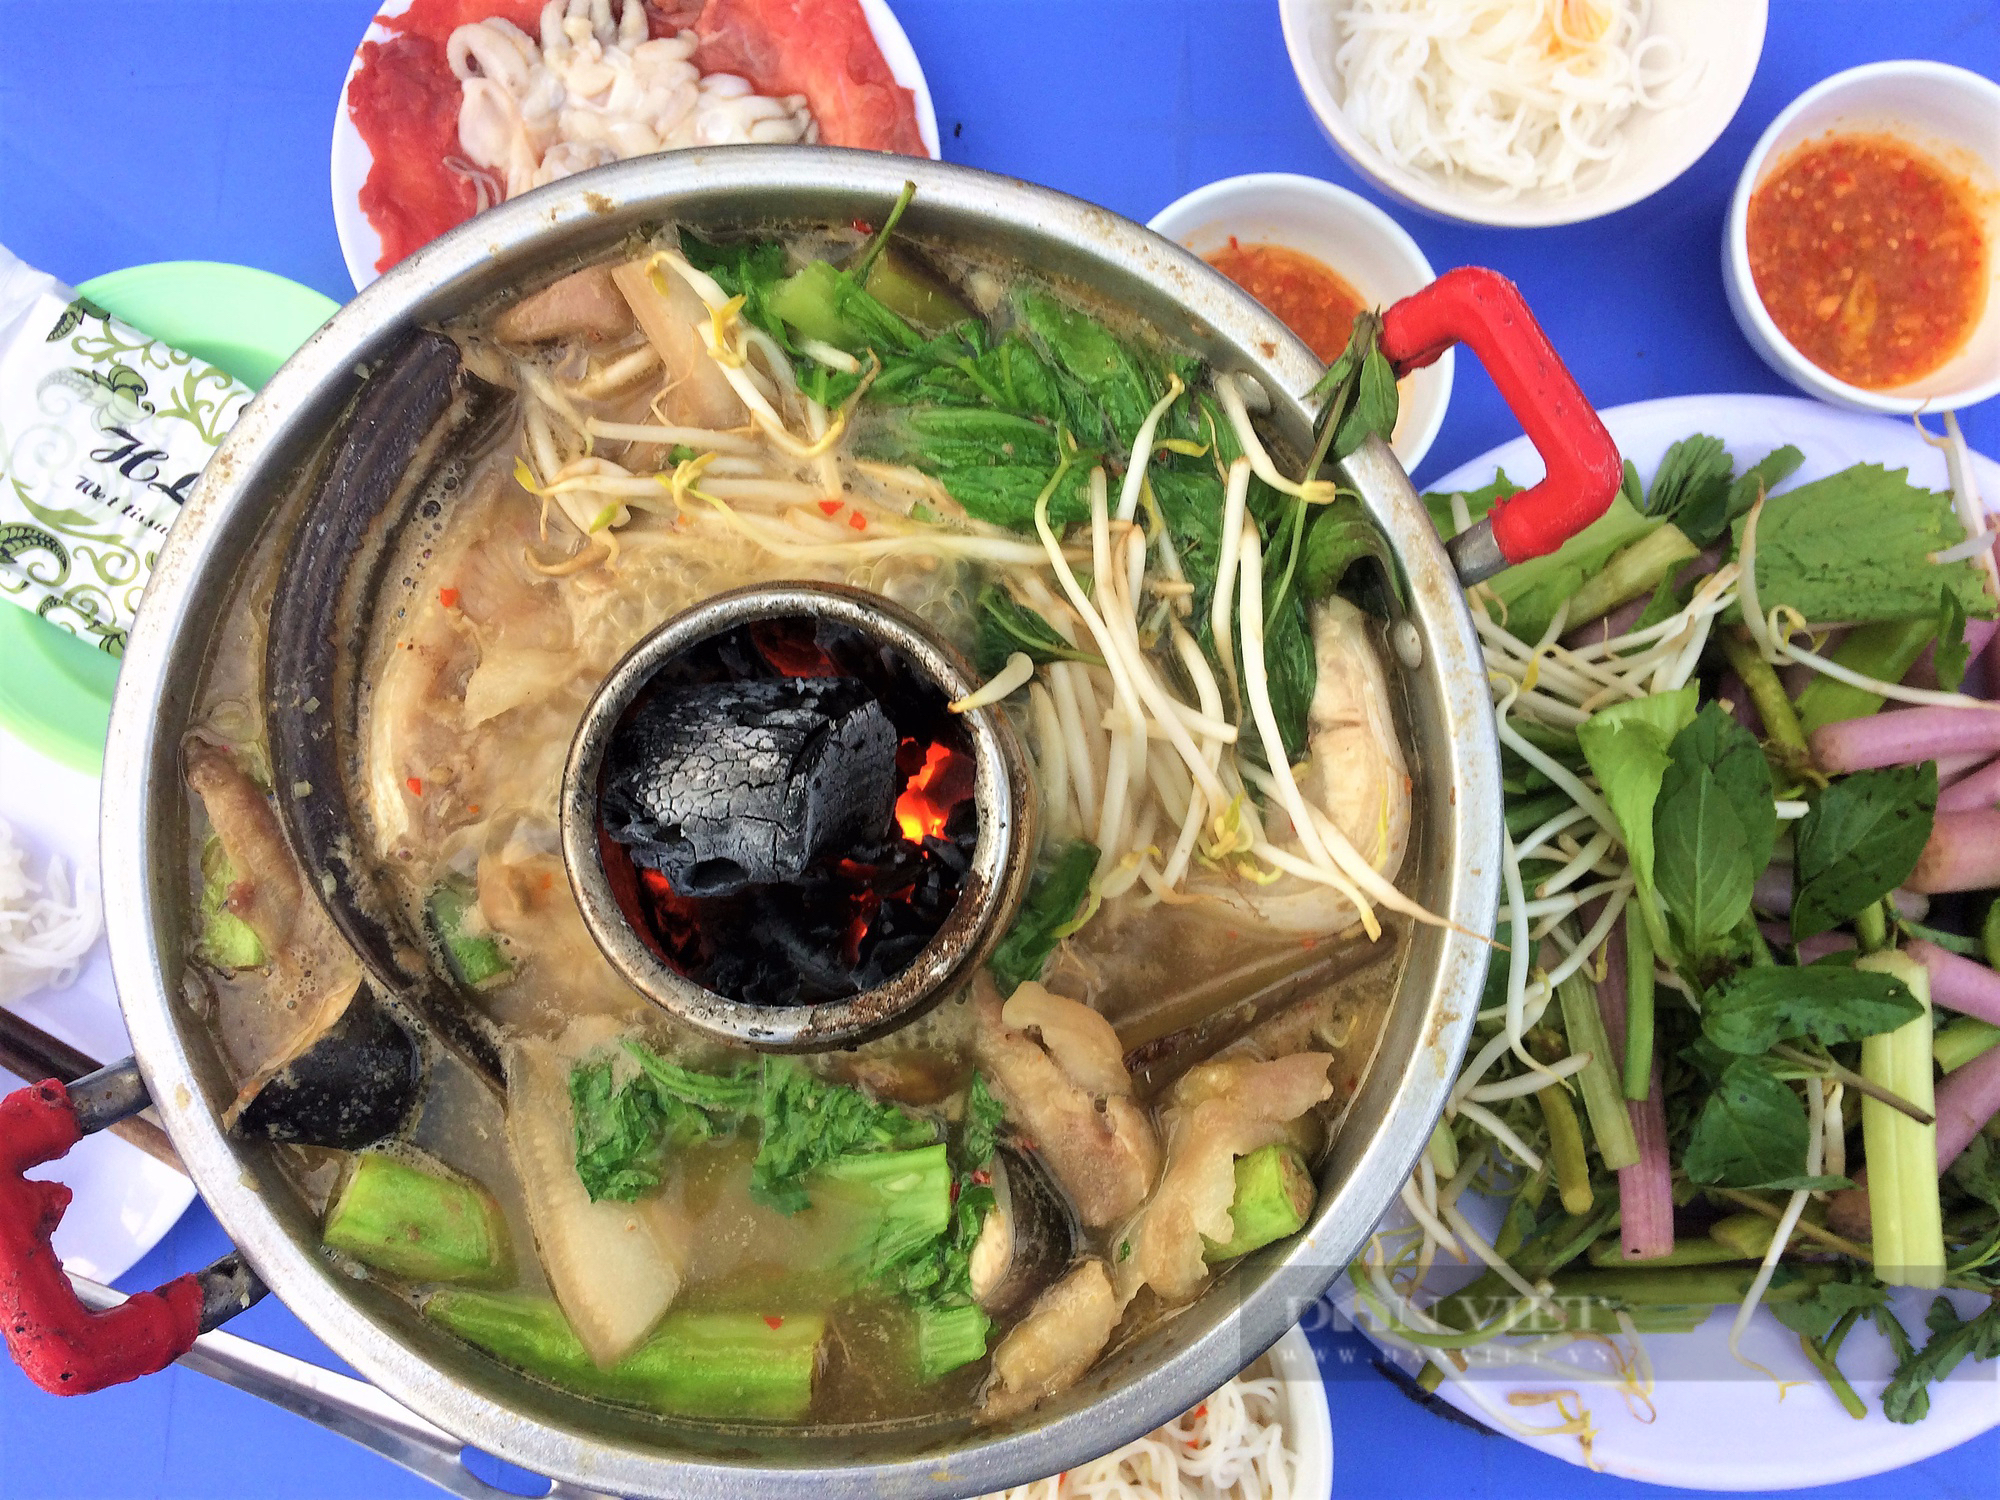 Sài Gòn quán: Lẩu mắm miền Tây đầy ắp cá, lươn, vị đậm đà, khách ngồi chờ cả tiếng mới được ăn - Ảnh 2.